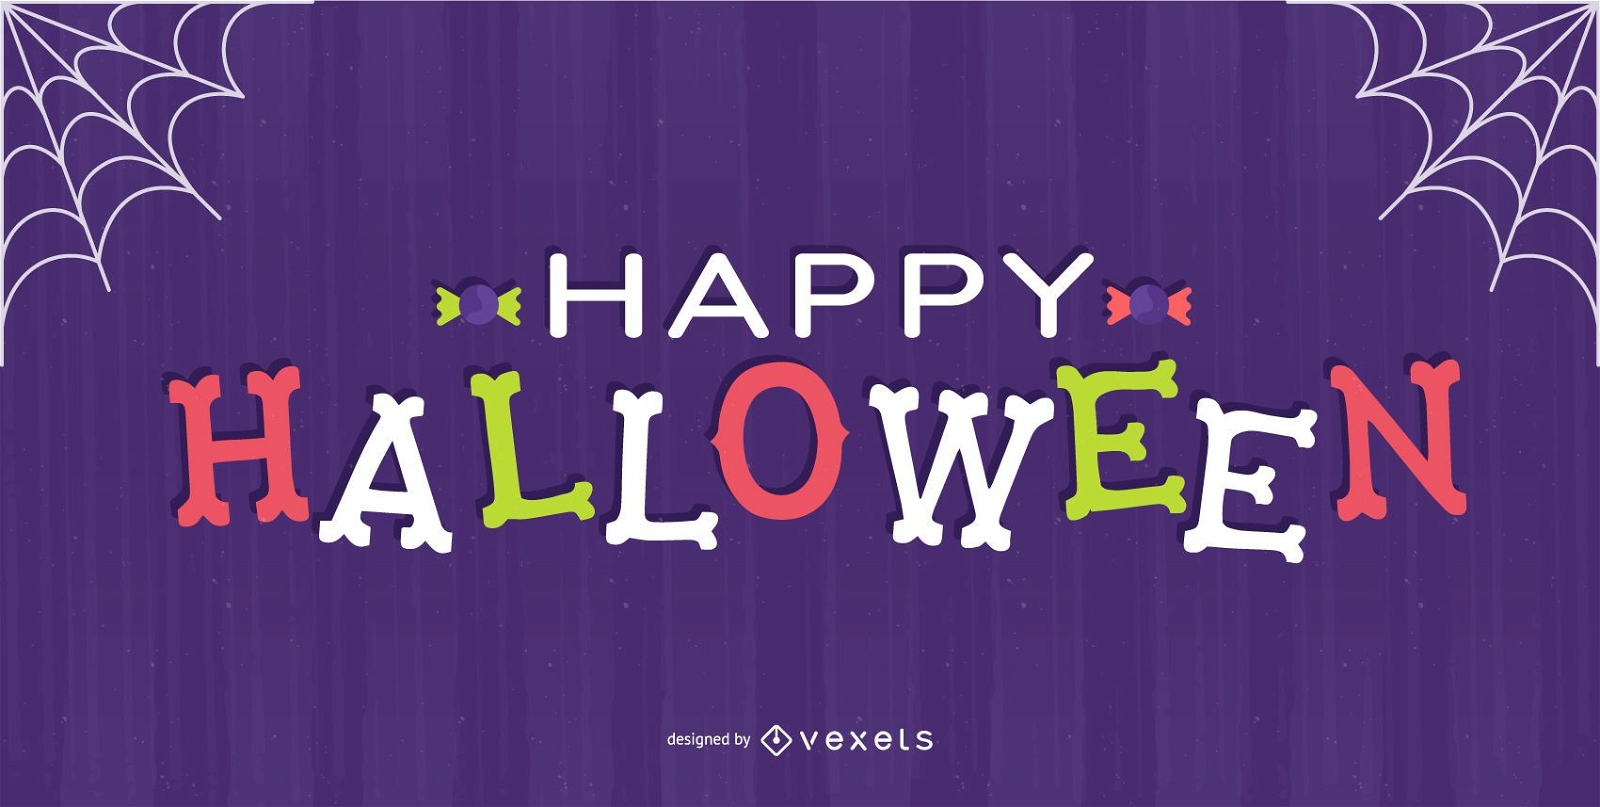 Happy halloween bones lettering design